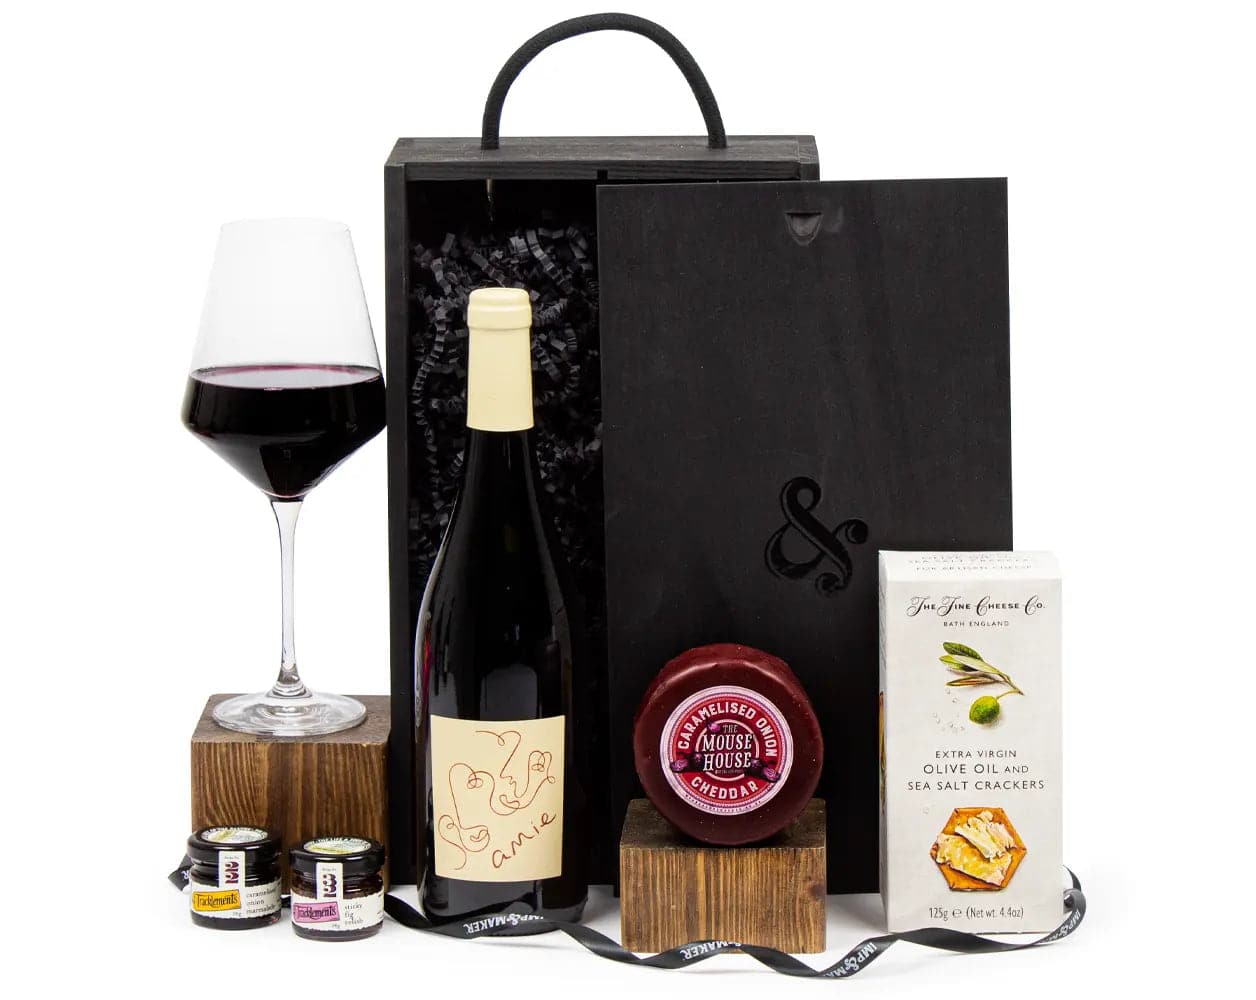 Amie Red Wine Cheese & Chutney Gift Box - IMP & MAKER